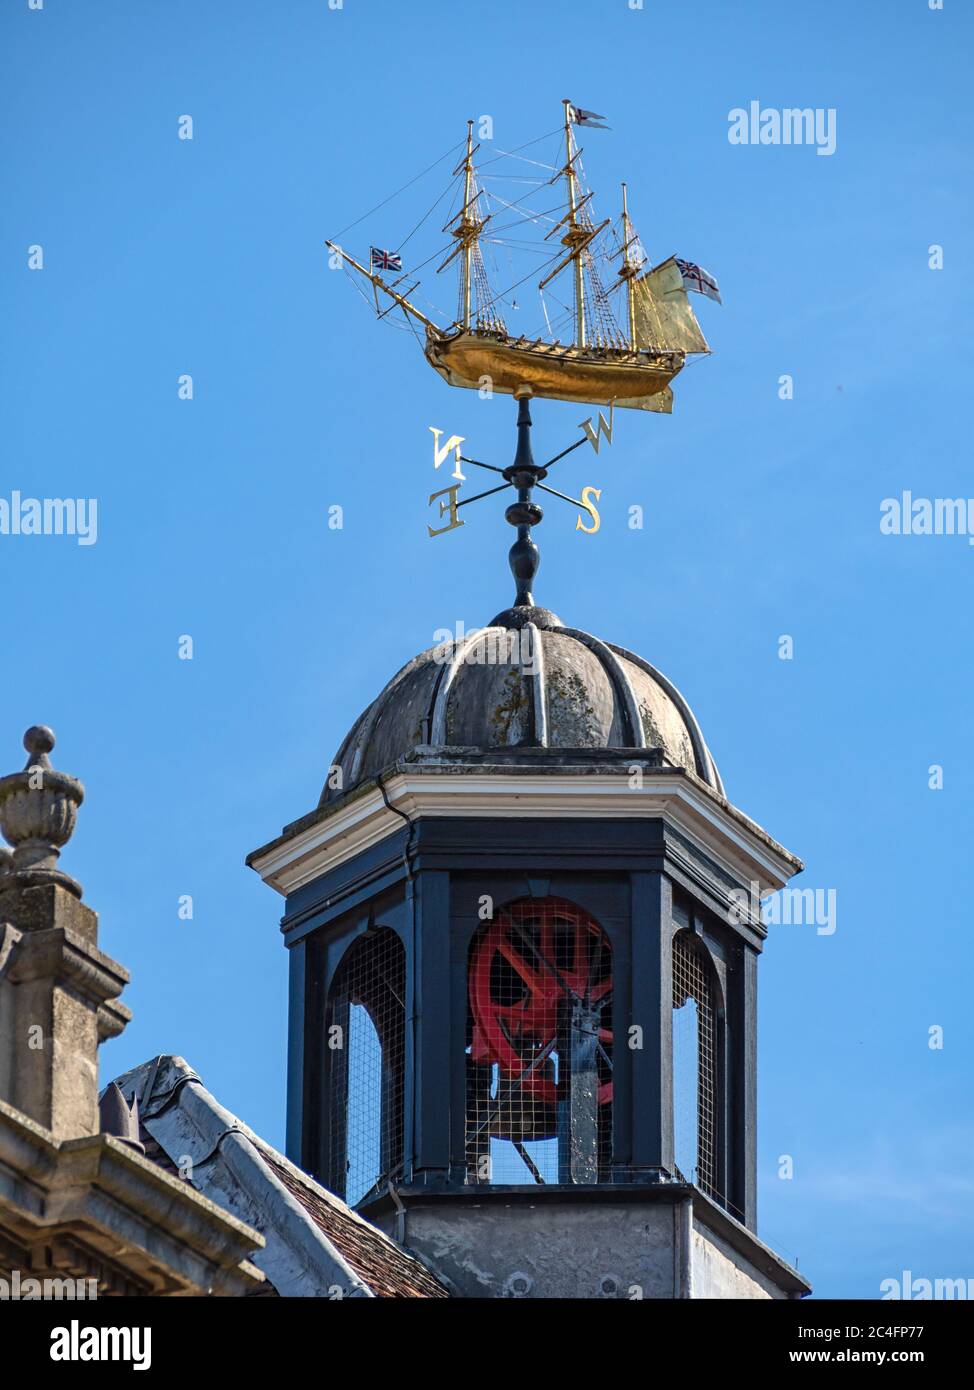 ROCHESTER, KENT, Großbritannien - 13. SEPTEMBER 2019: Die Kuppel und die Wetterfahne in Form eines Kriegsschiffs aus dem 18. Jahrhundert über dem Rochester Guildhall Museum Stockfoto